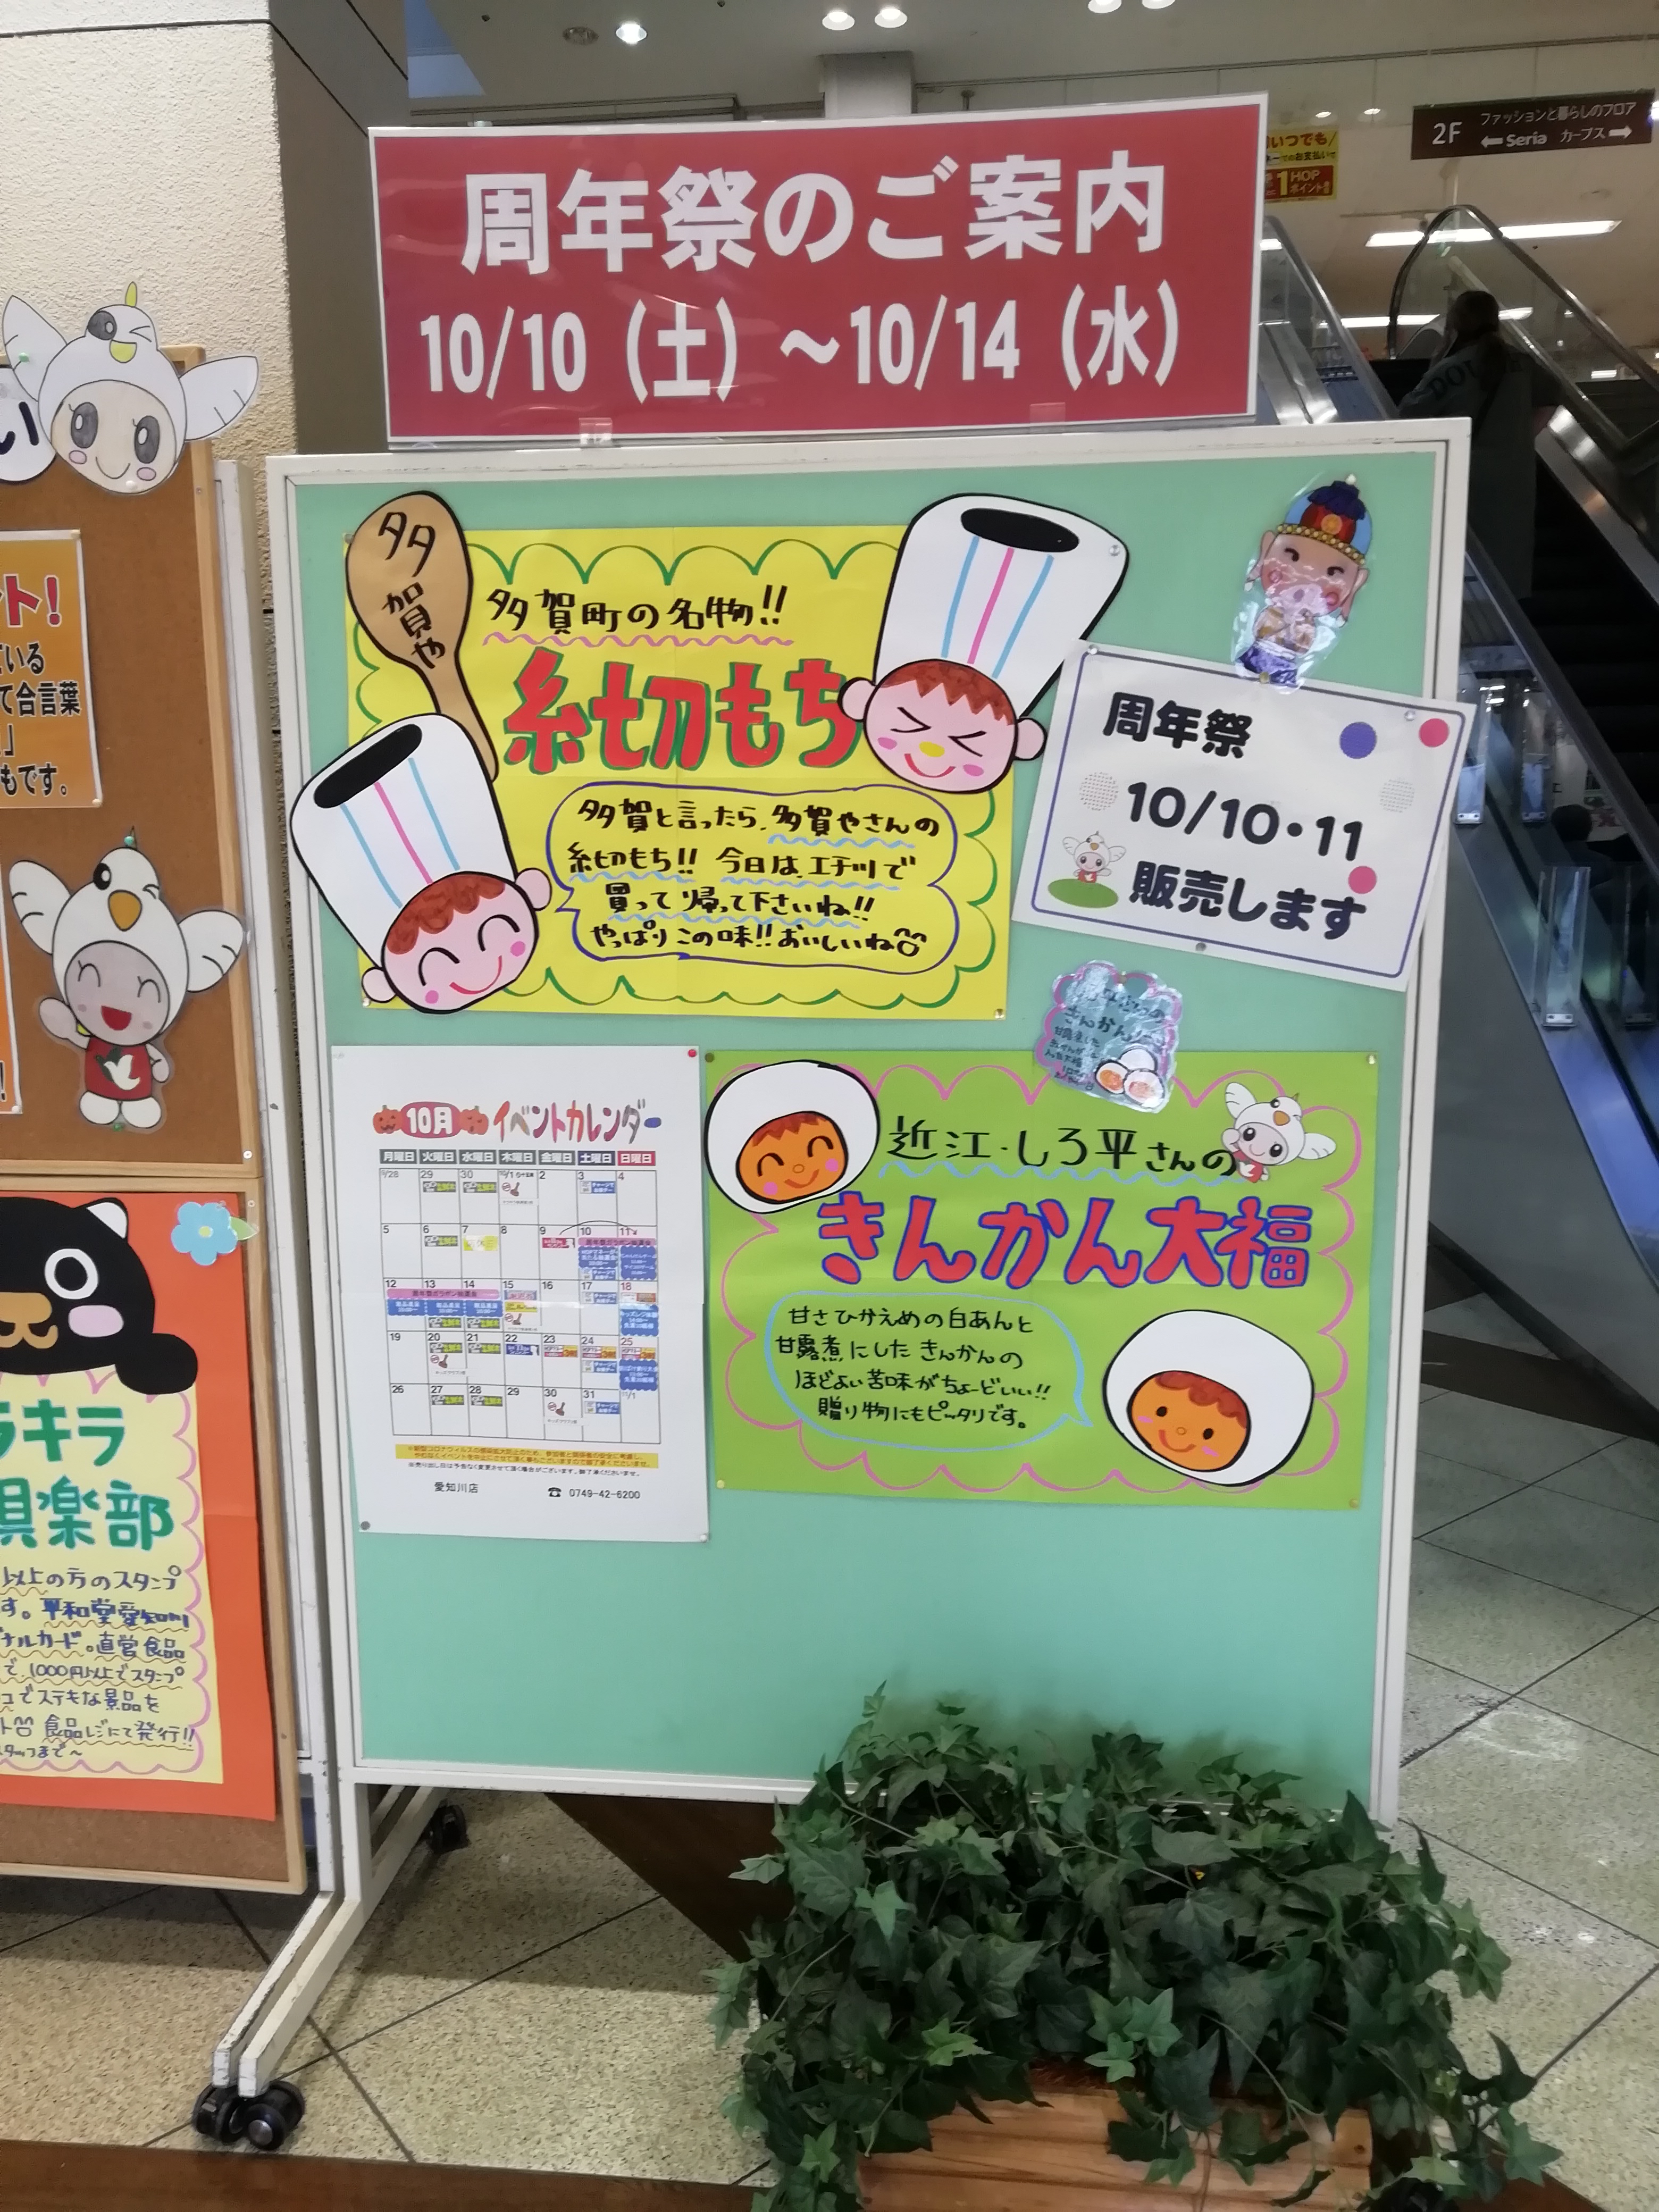 10月10日 14日 平和堂愛知川店で周年祭開催 10日 11日は美味しい和菓子が販売されます 滋賀のママがイベント 育児 遊び 学びを発信 シガマンマ ピースマム